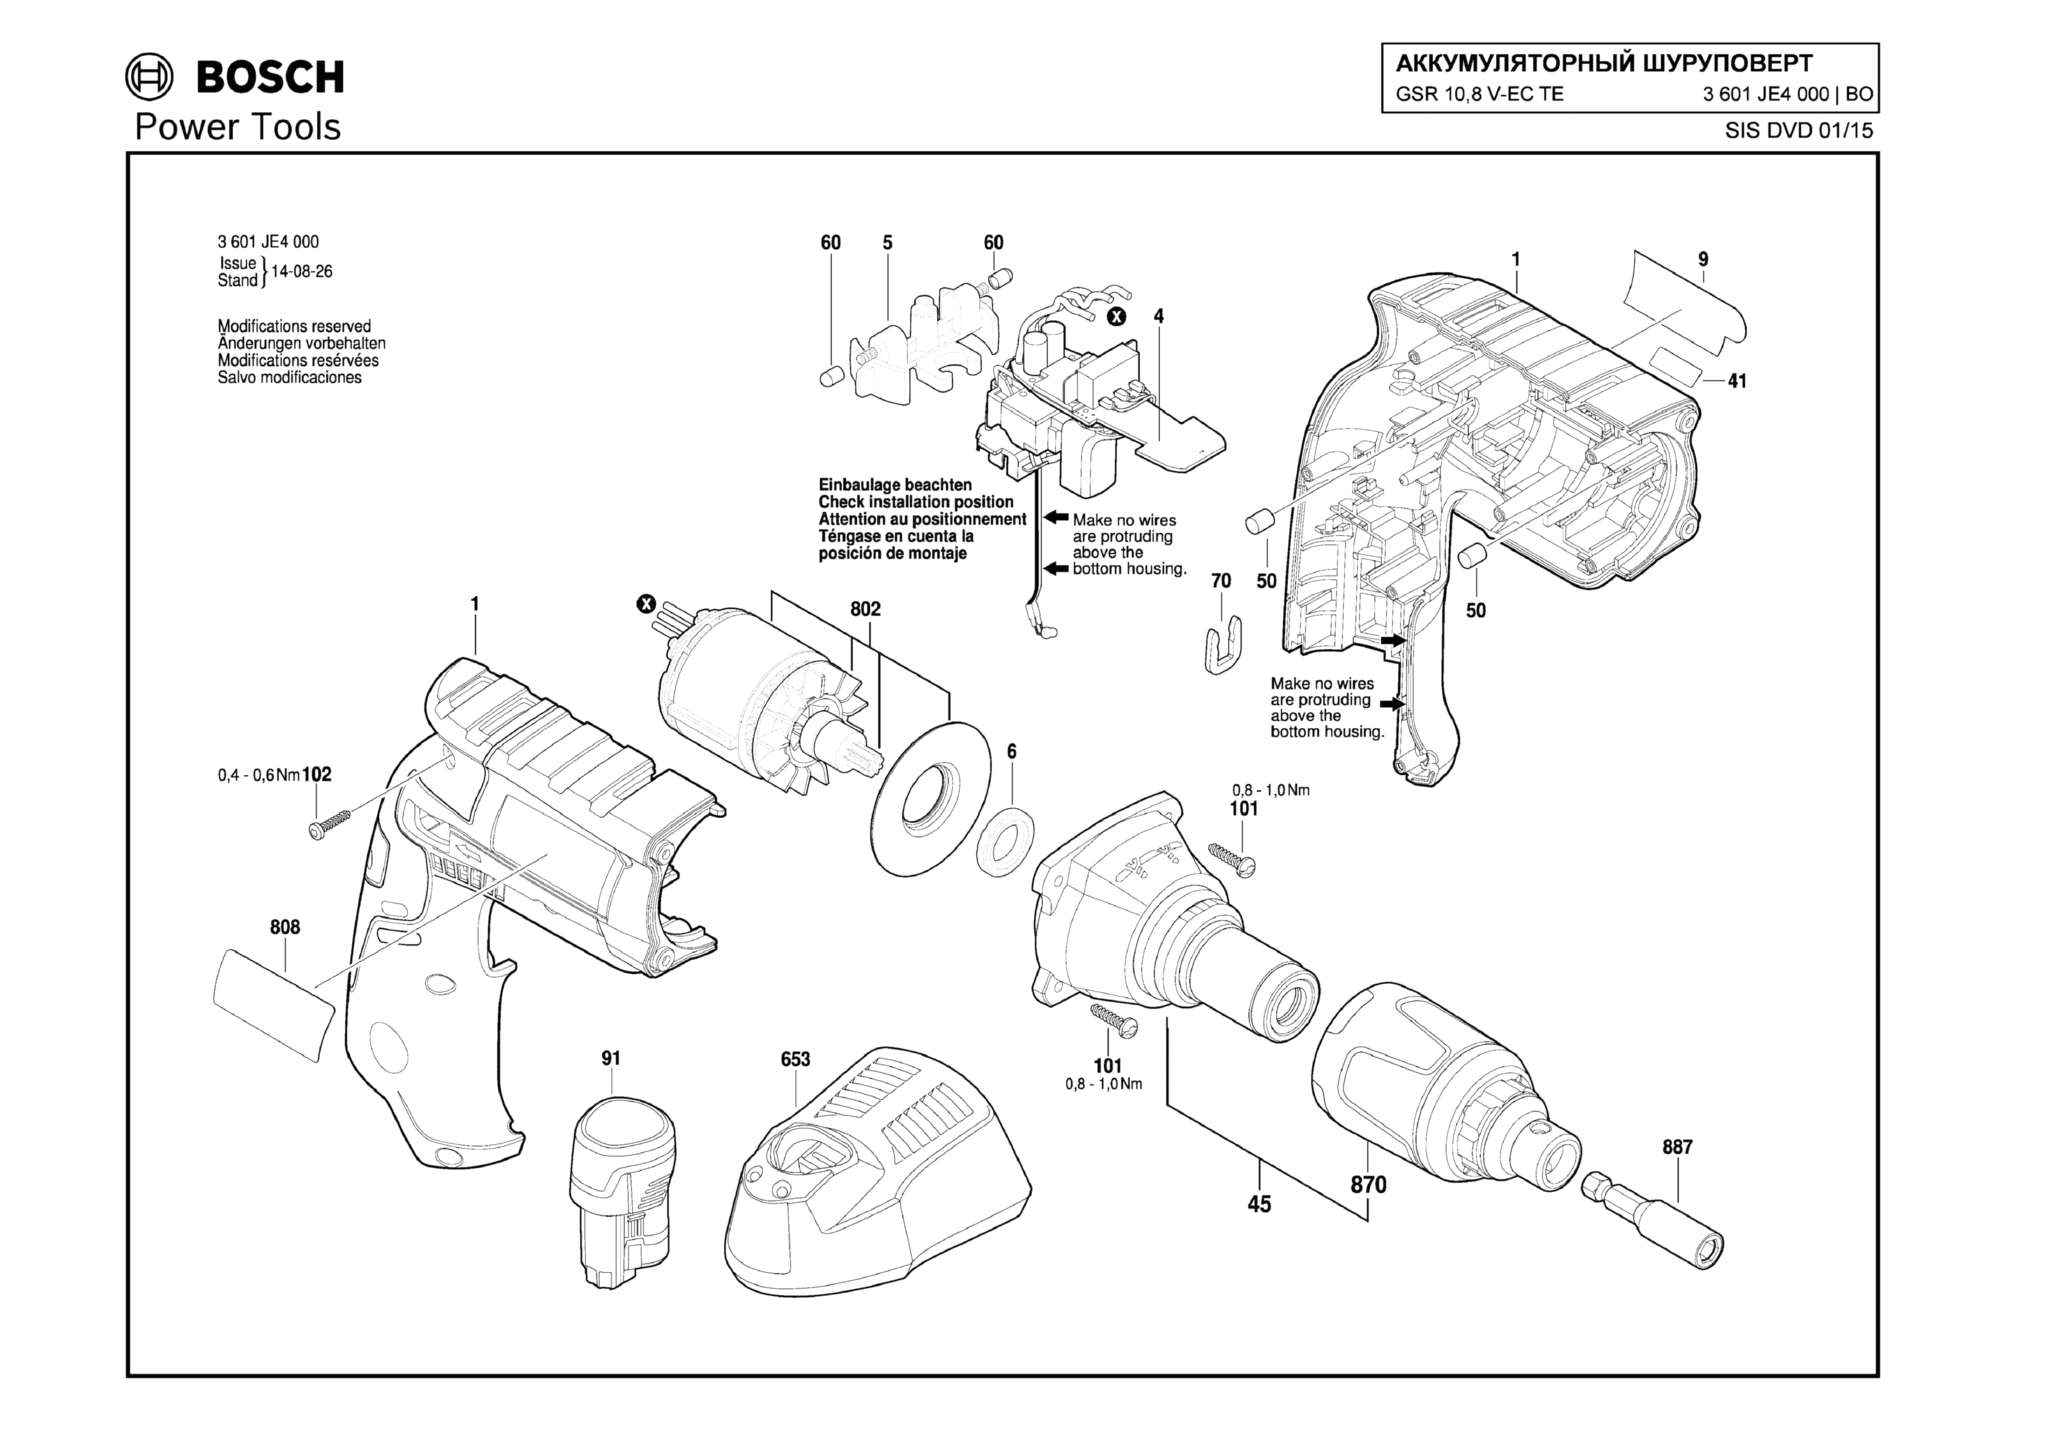 Запчасти, схема и деталировка Bosch GSR 10,8 V-EC TE (ТИП 3601JE4000)